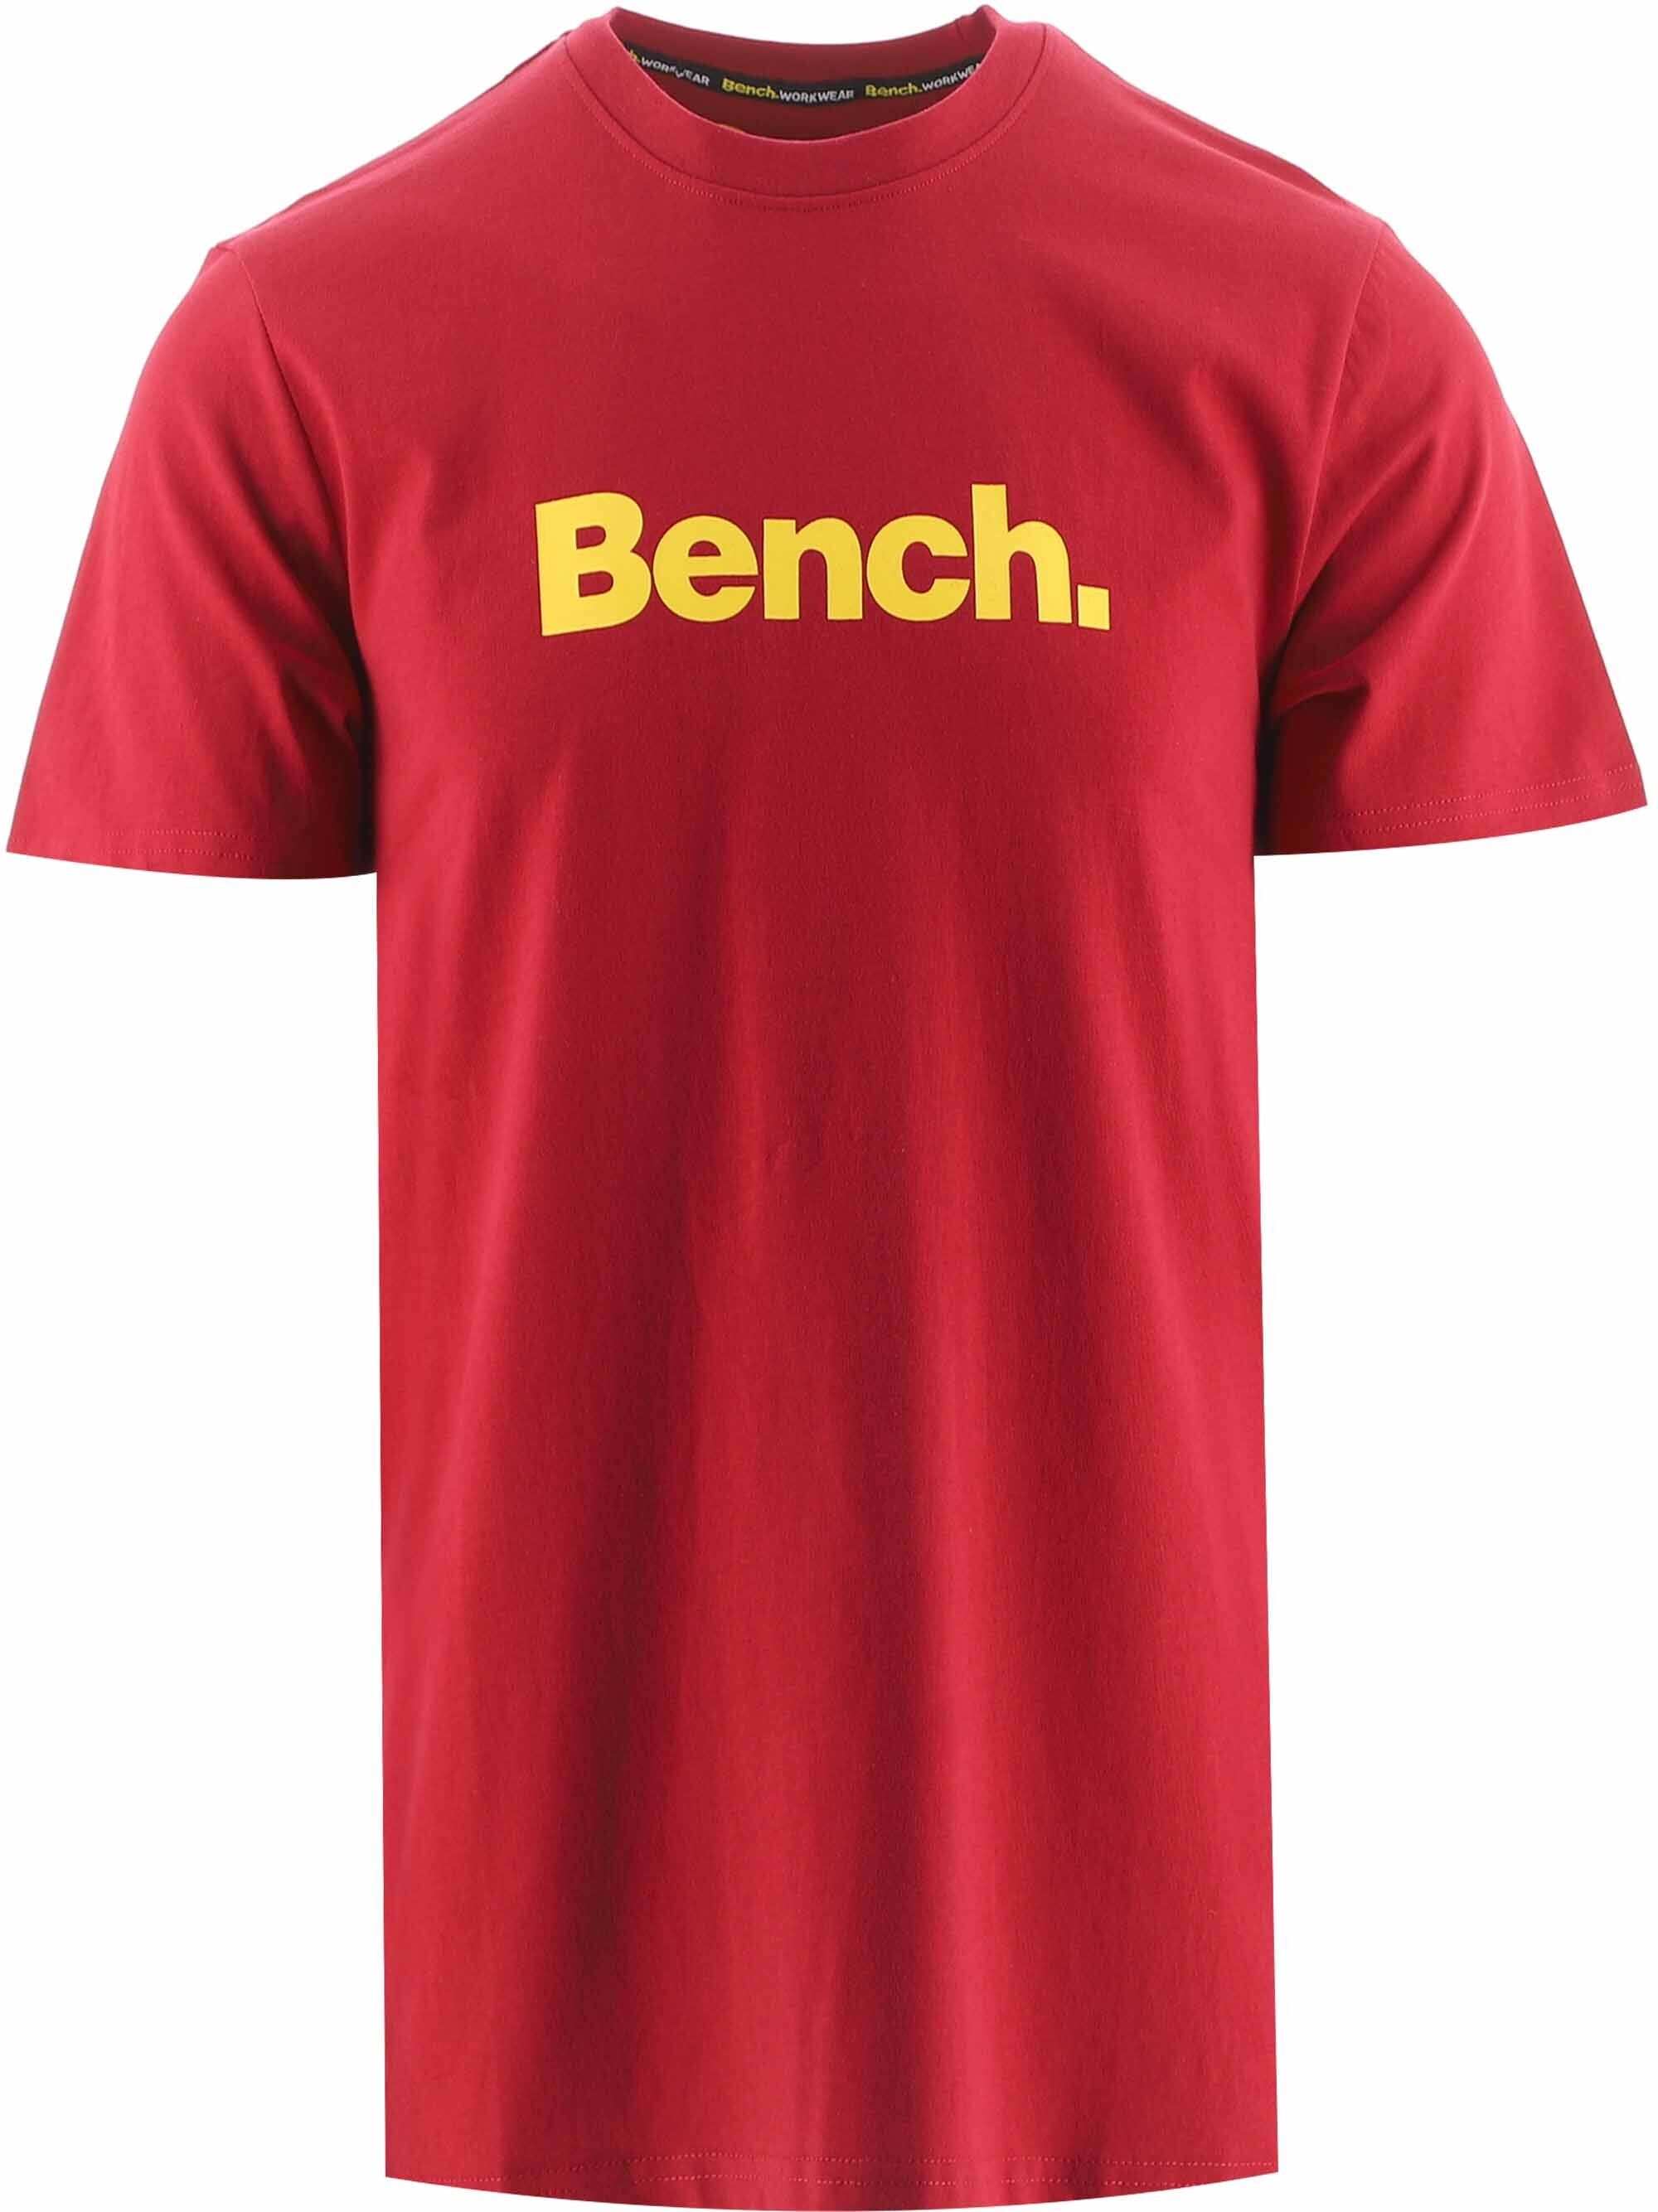 Kaufen Sie Bank-rotes Cornwall-T-Shirt zu Großhandelspreisen